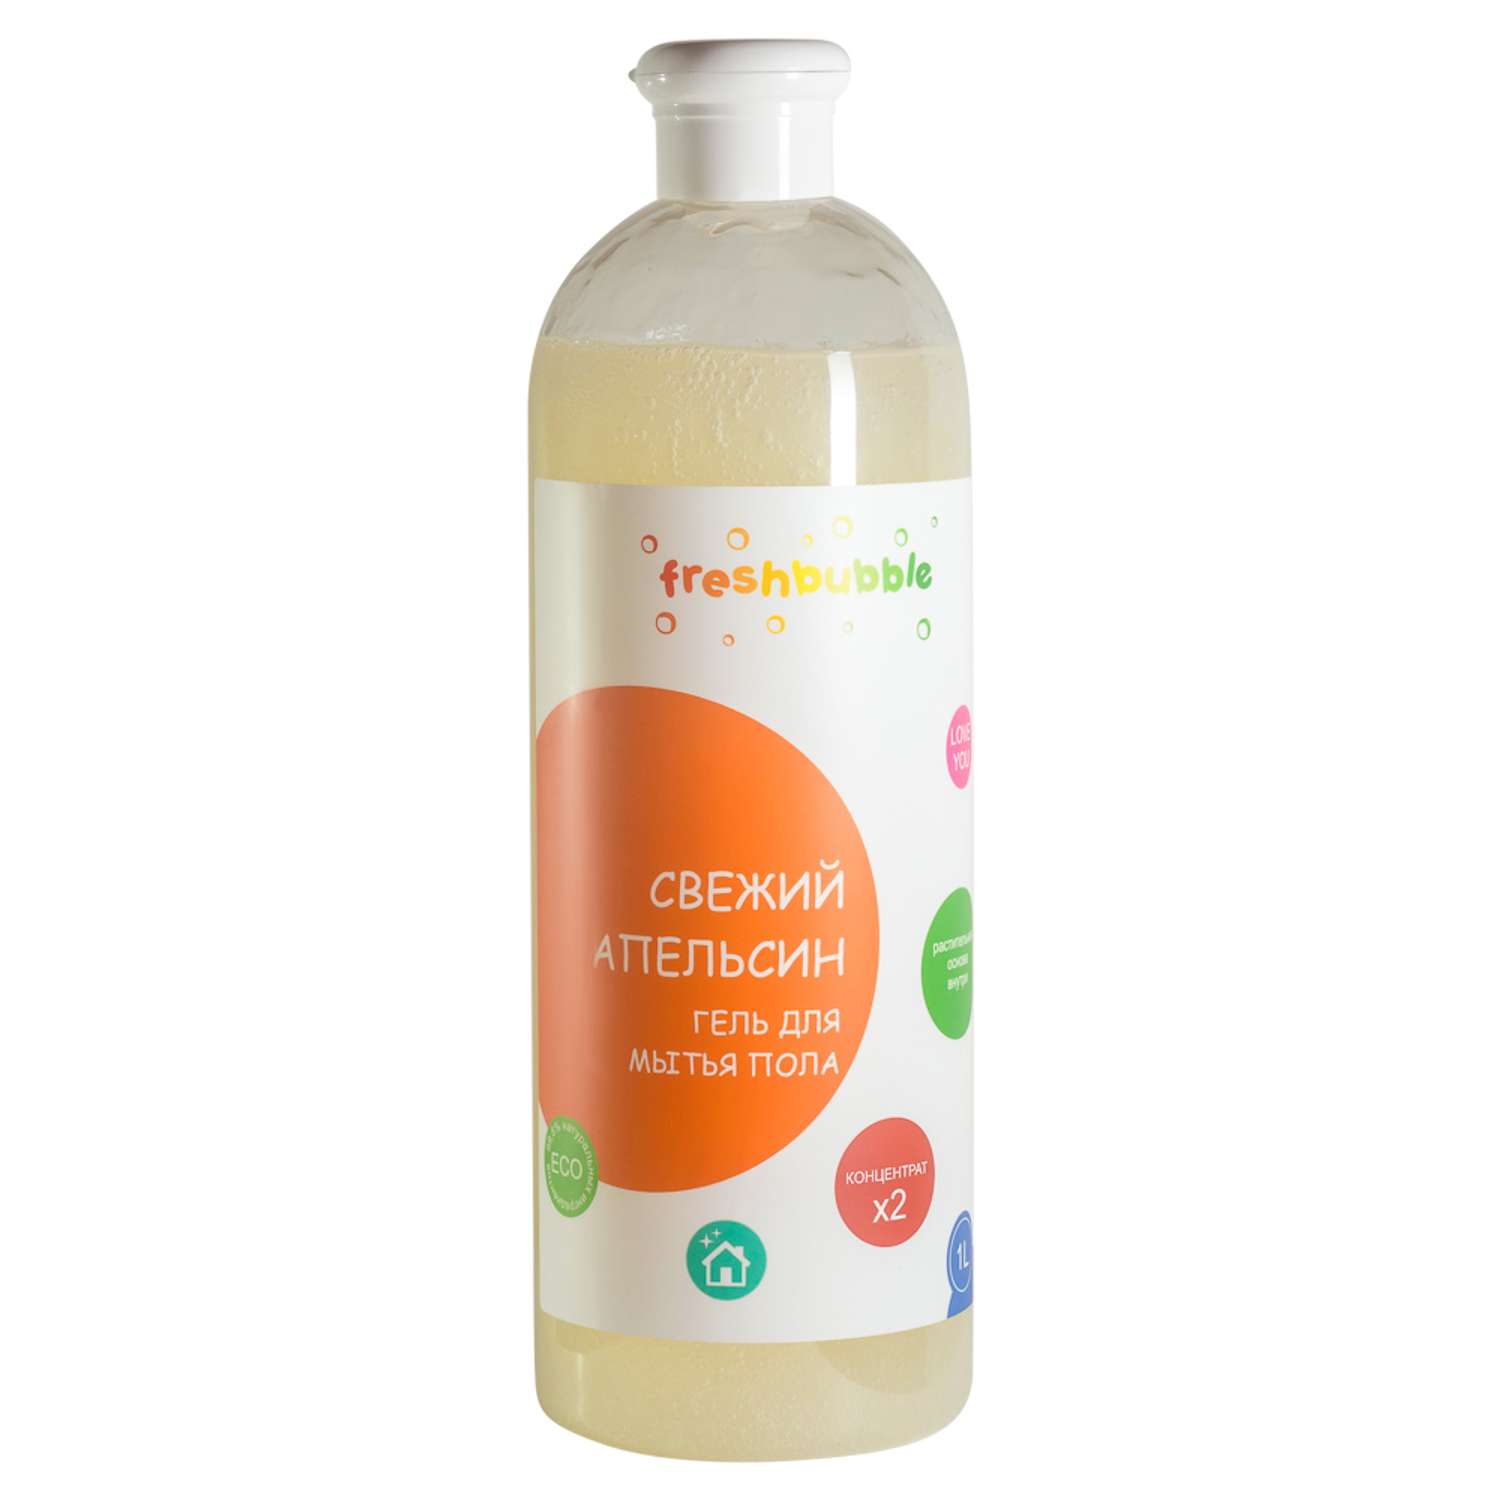 Гель для мытья полов Freshbubble Свежий Апельсин 1л - фото 1